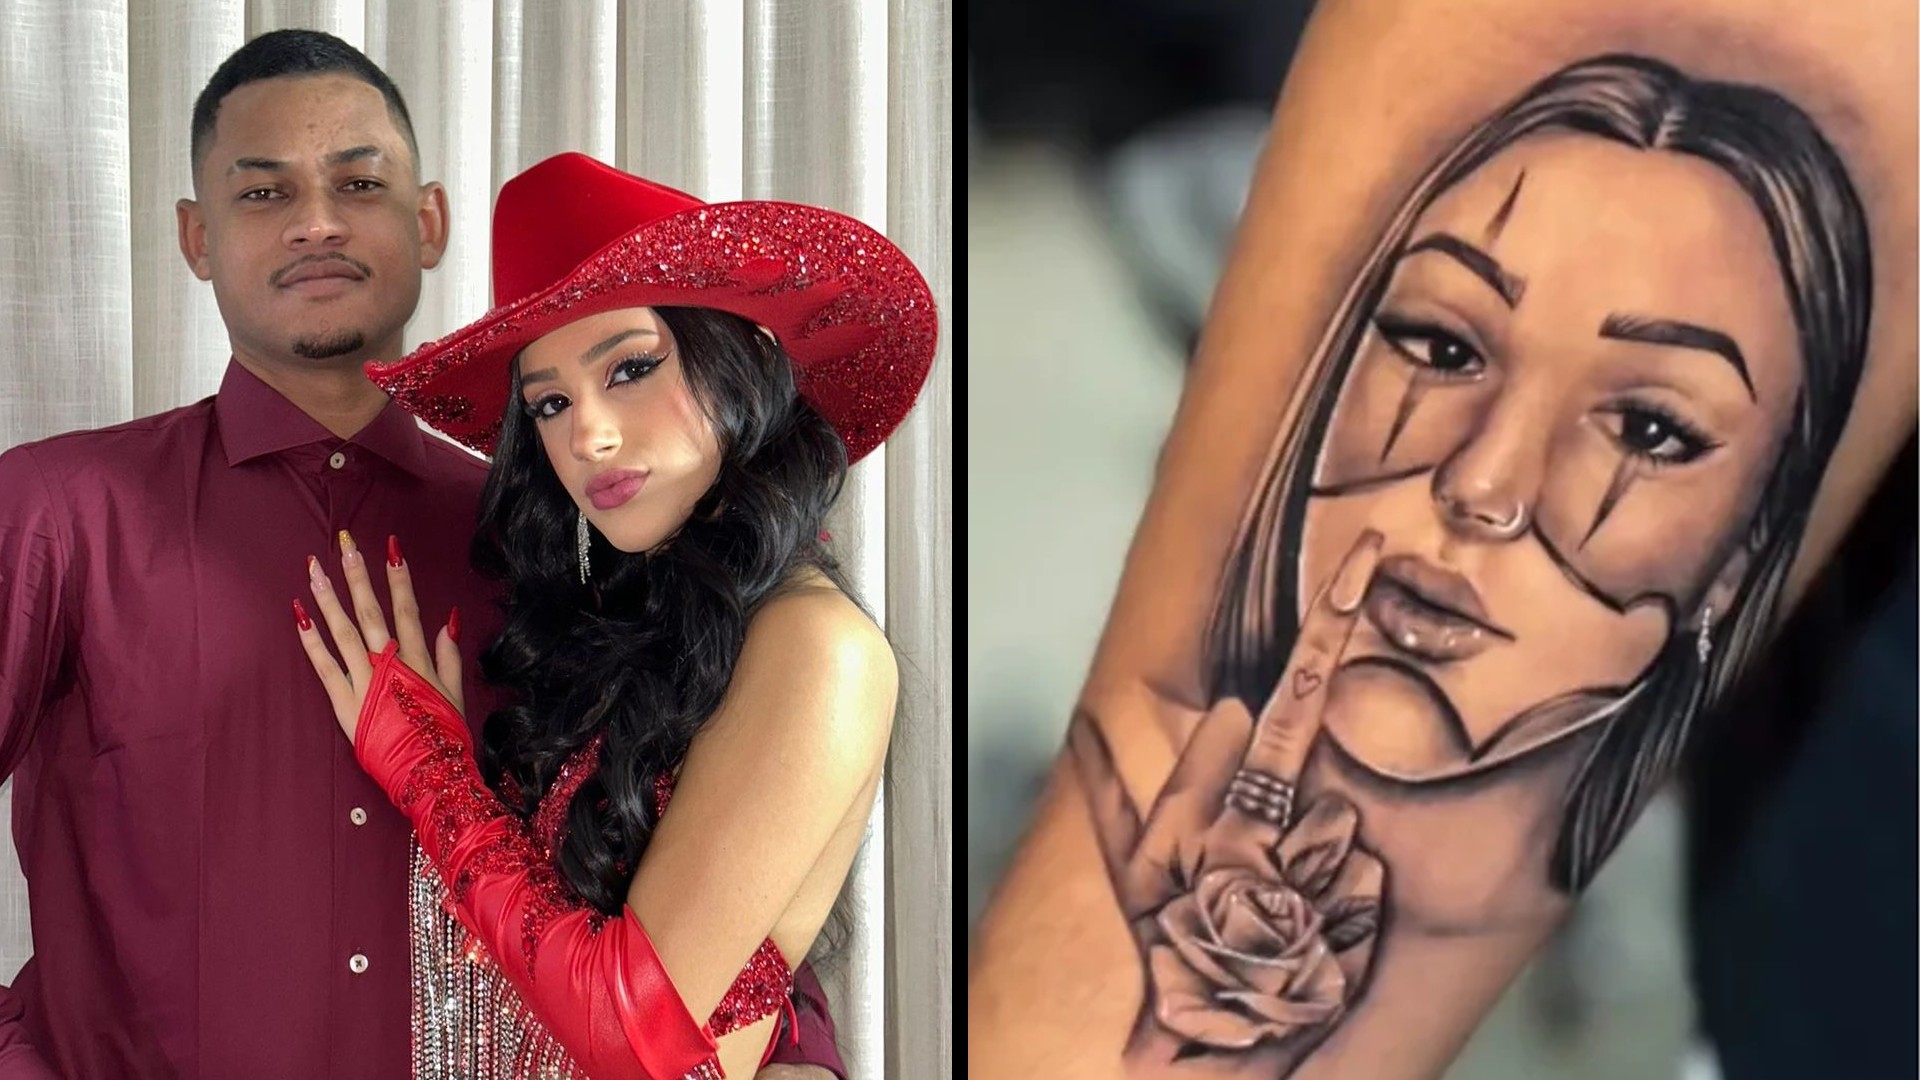 Marido de Bia Miranda faz tatuagem da amada e gera polêmica na internet